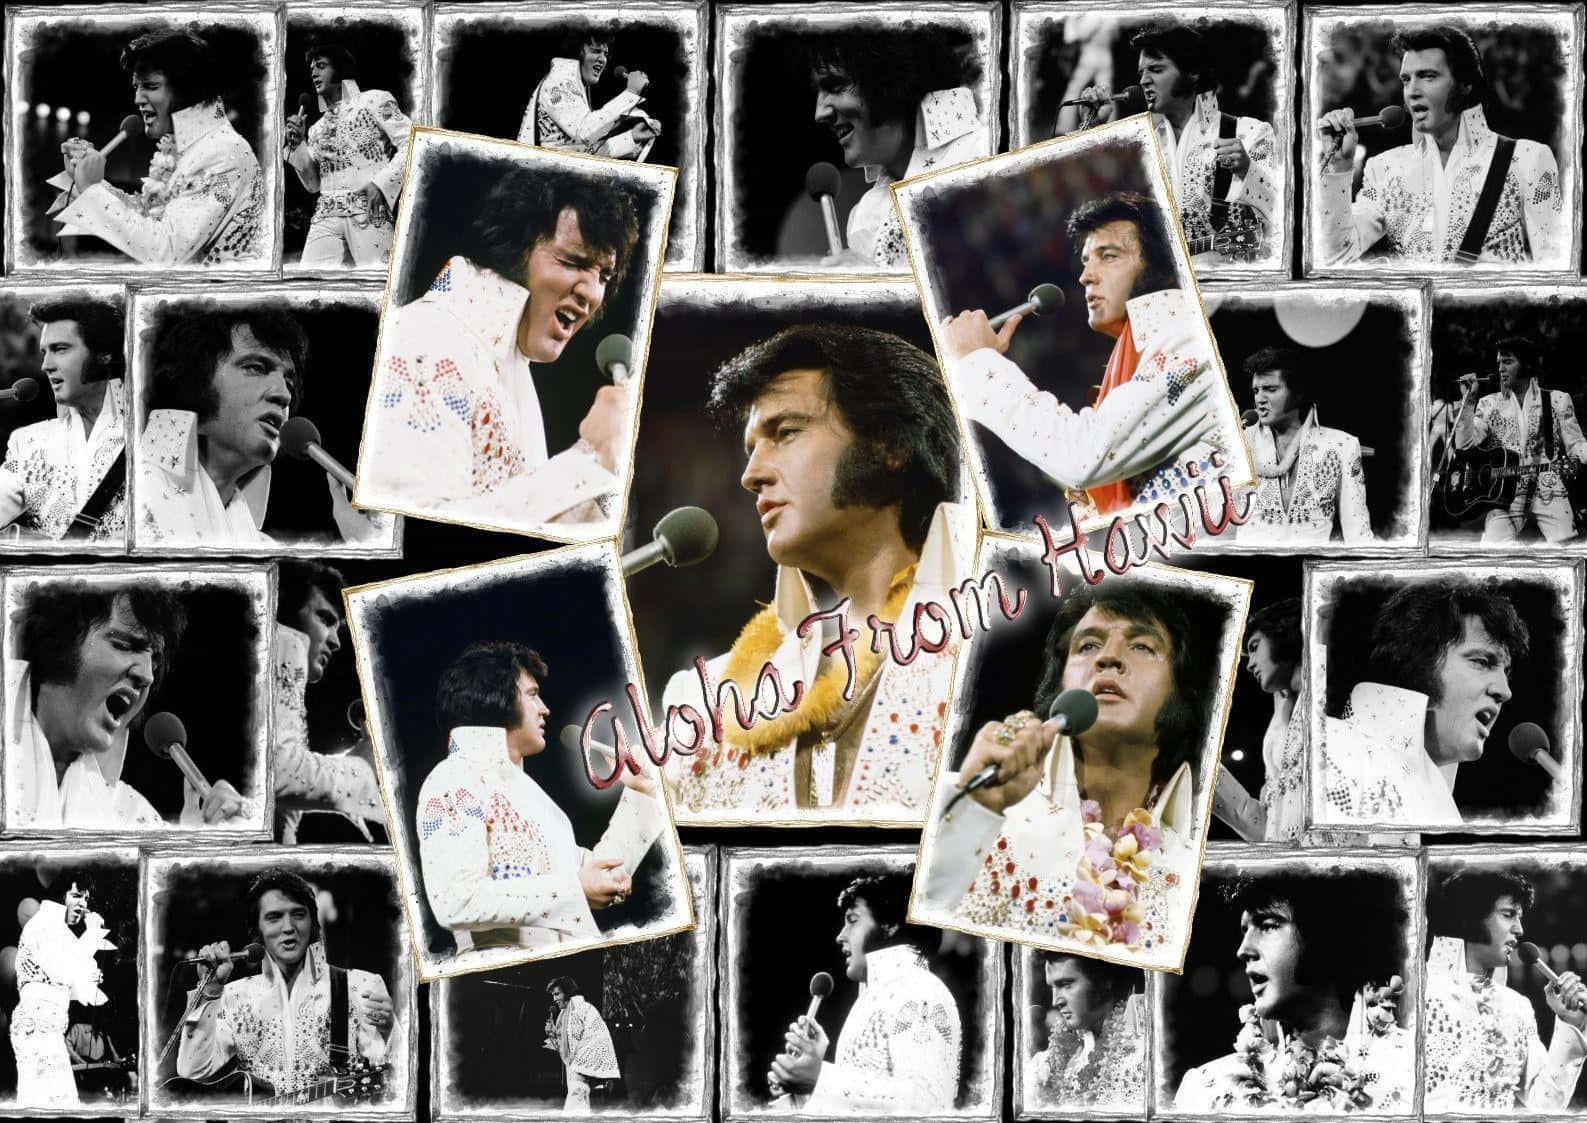 Elvis Presley, the King of Rock